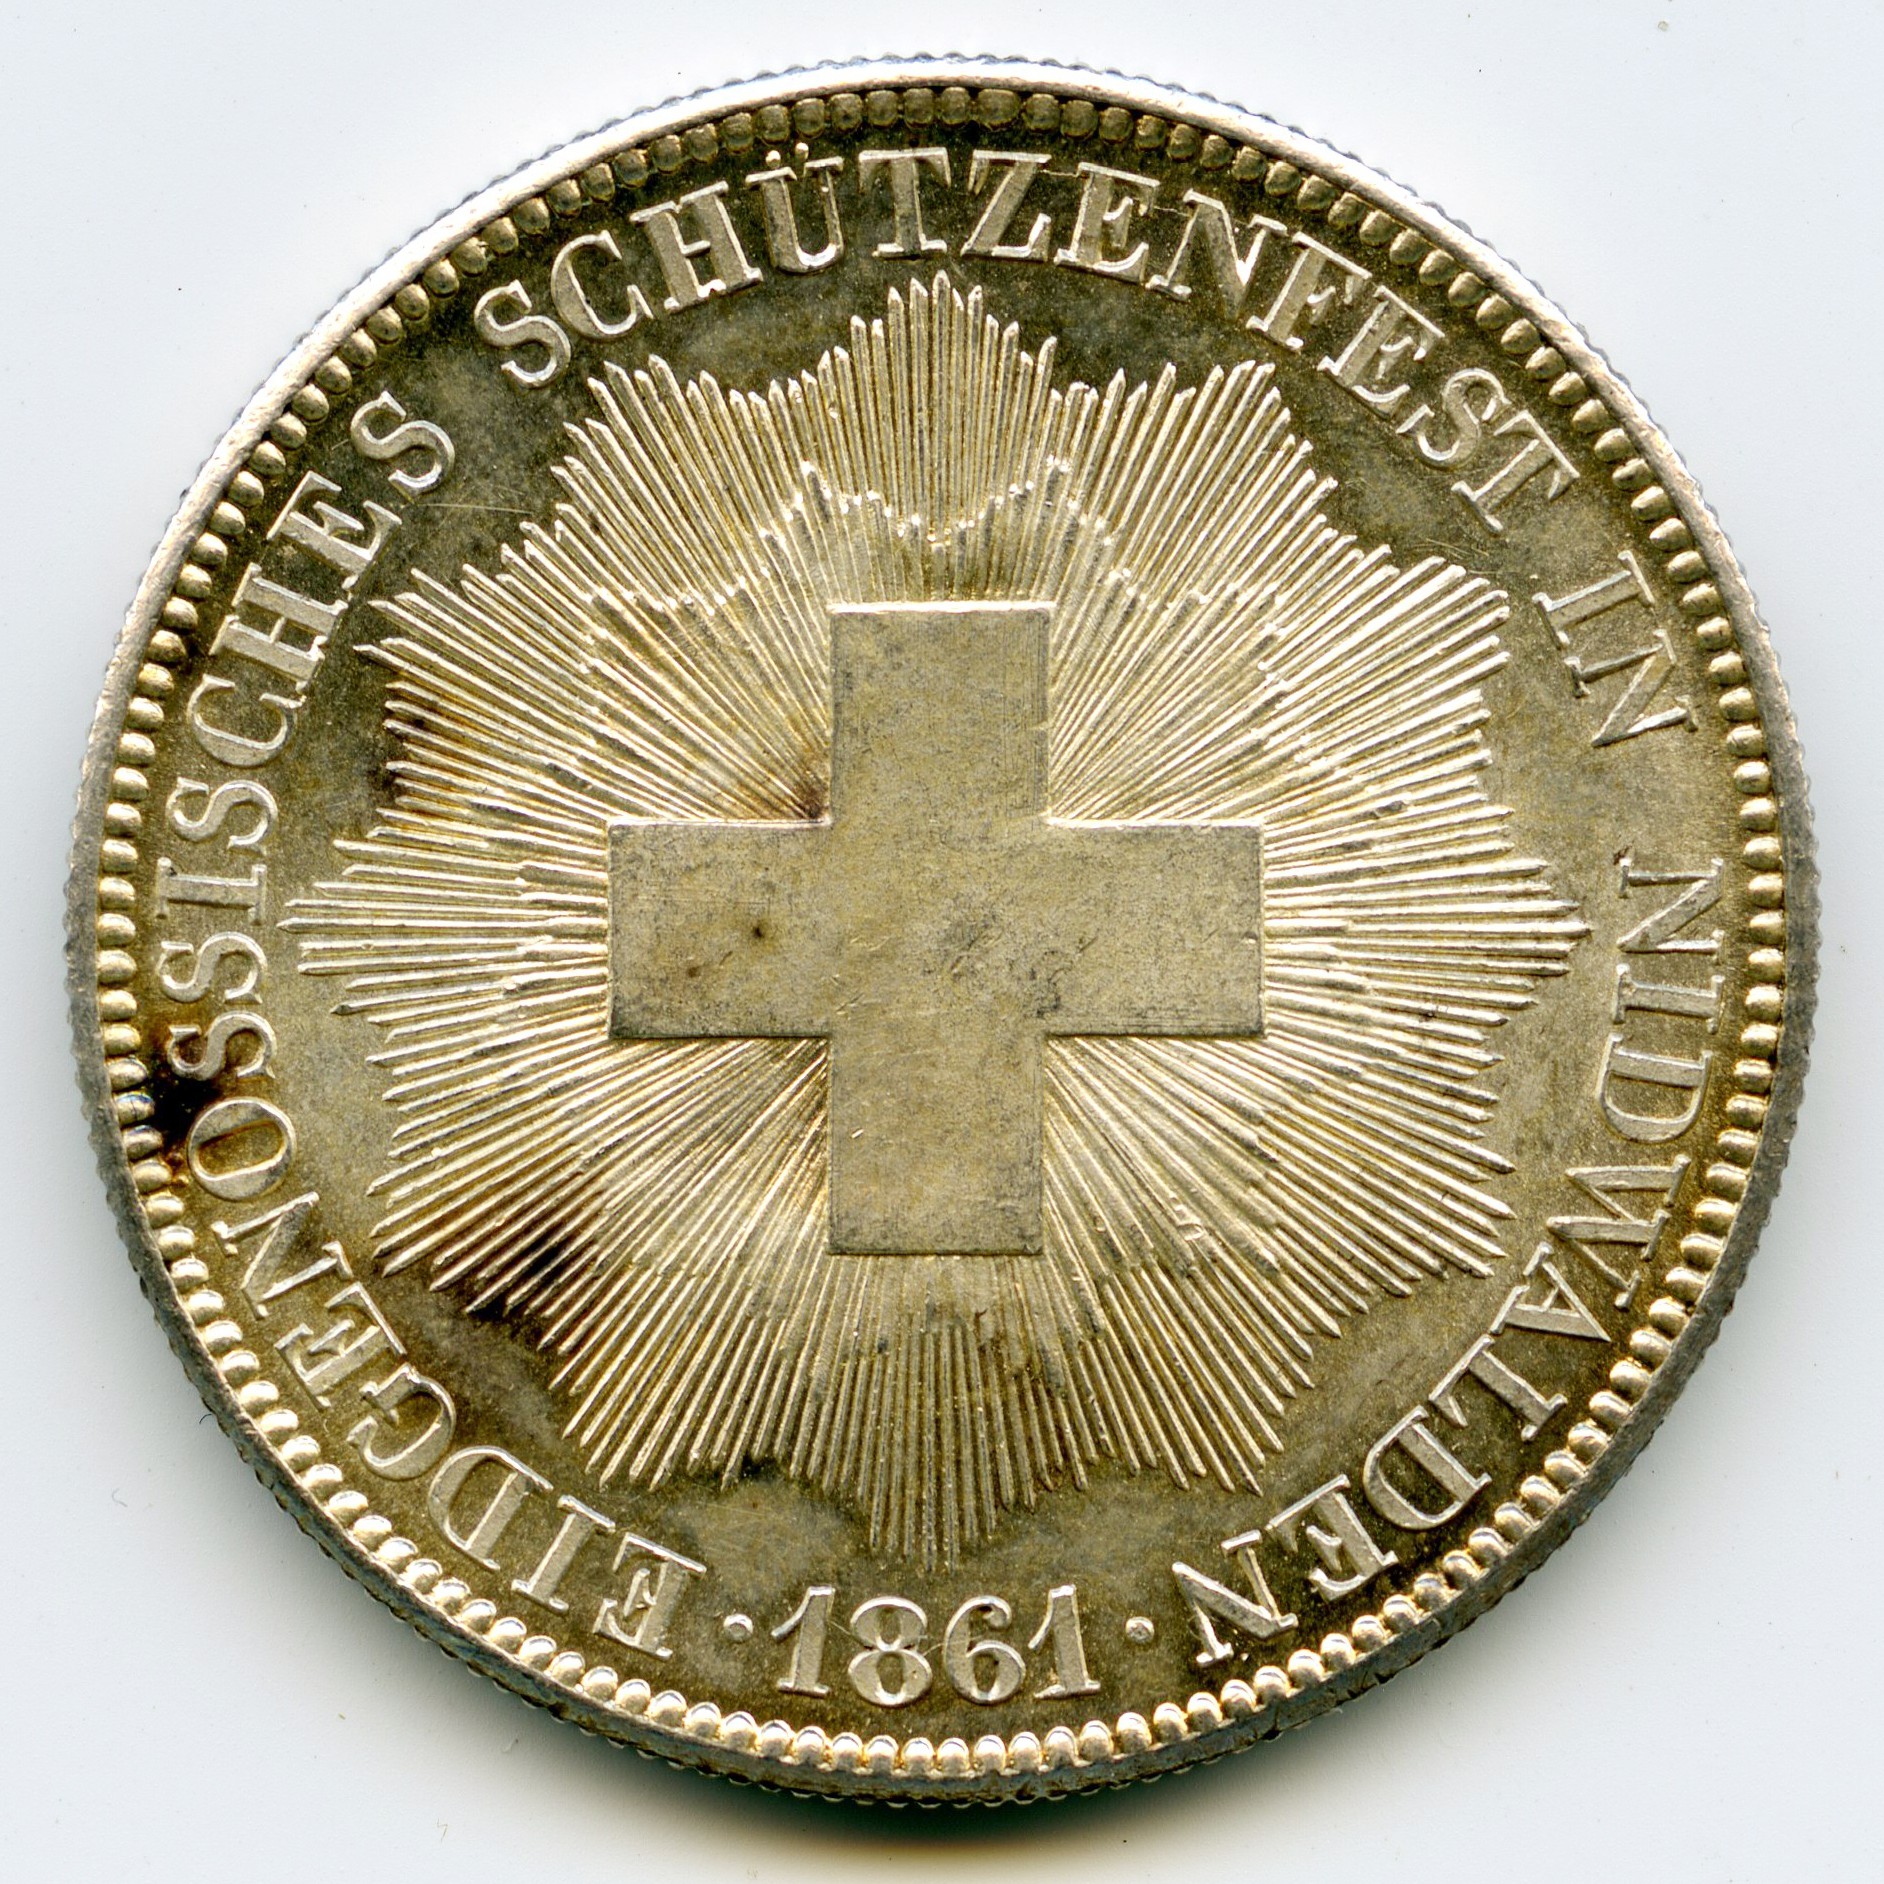 Suisse - 5 Francs - 1861 revers